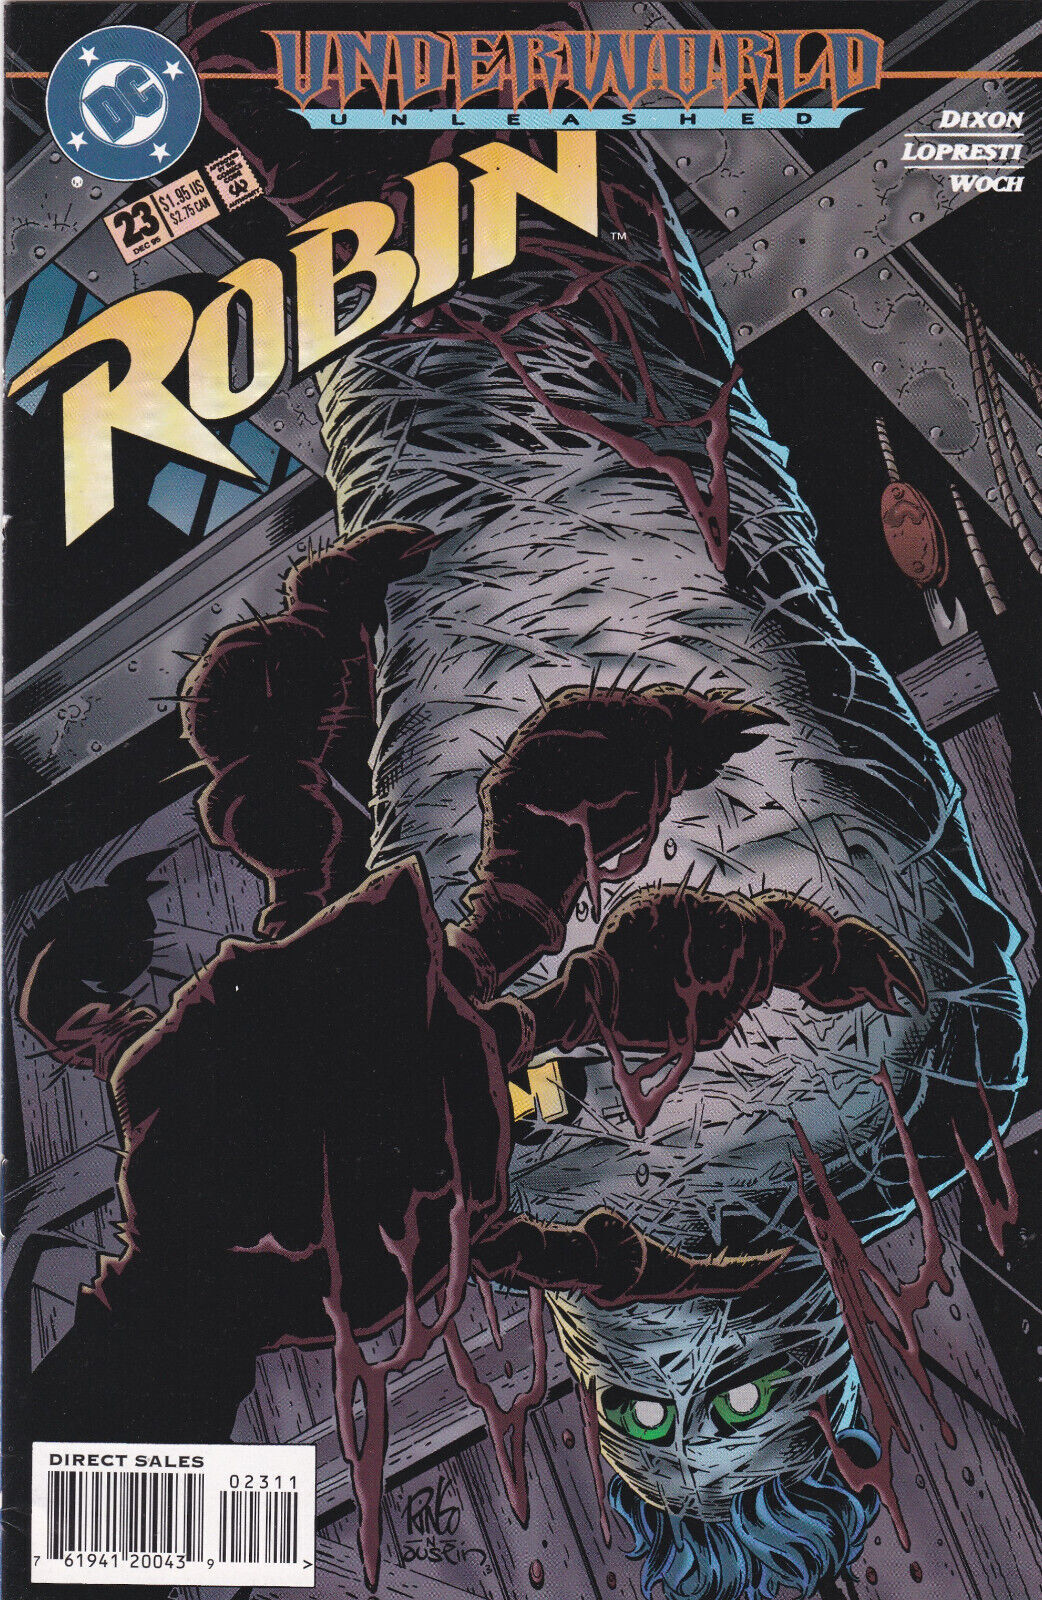 Robin #23, Vol. 2 (1993-2009) DC Comics, High Grade